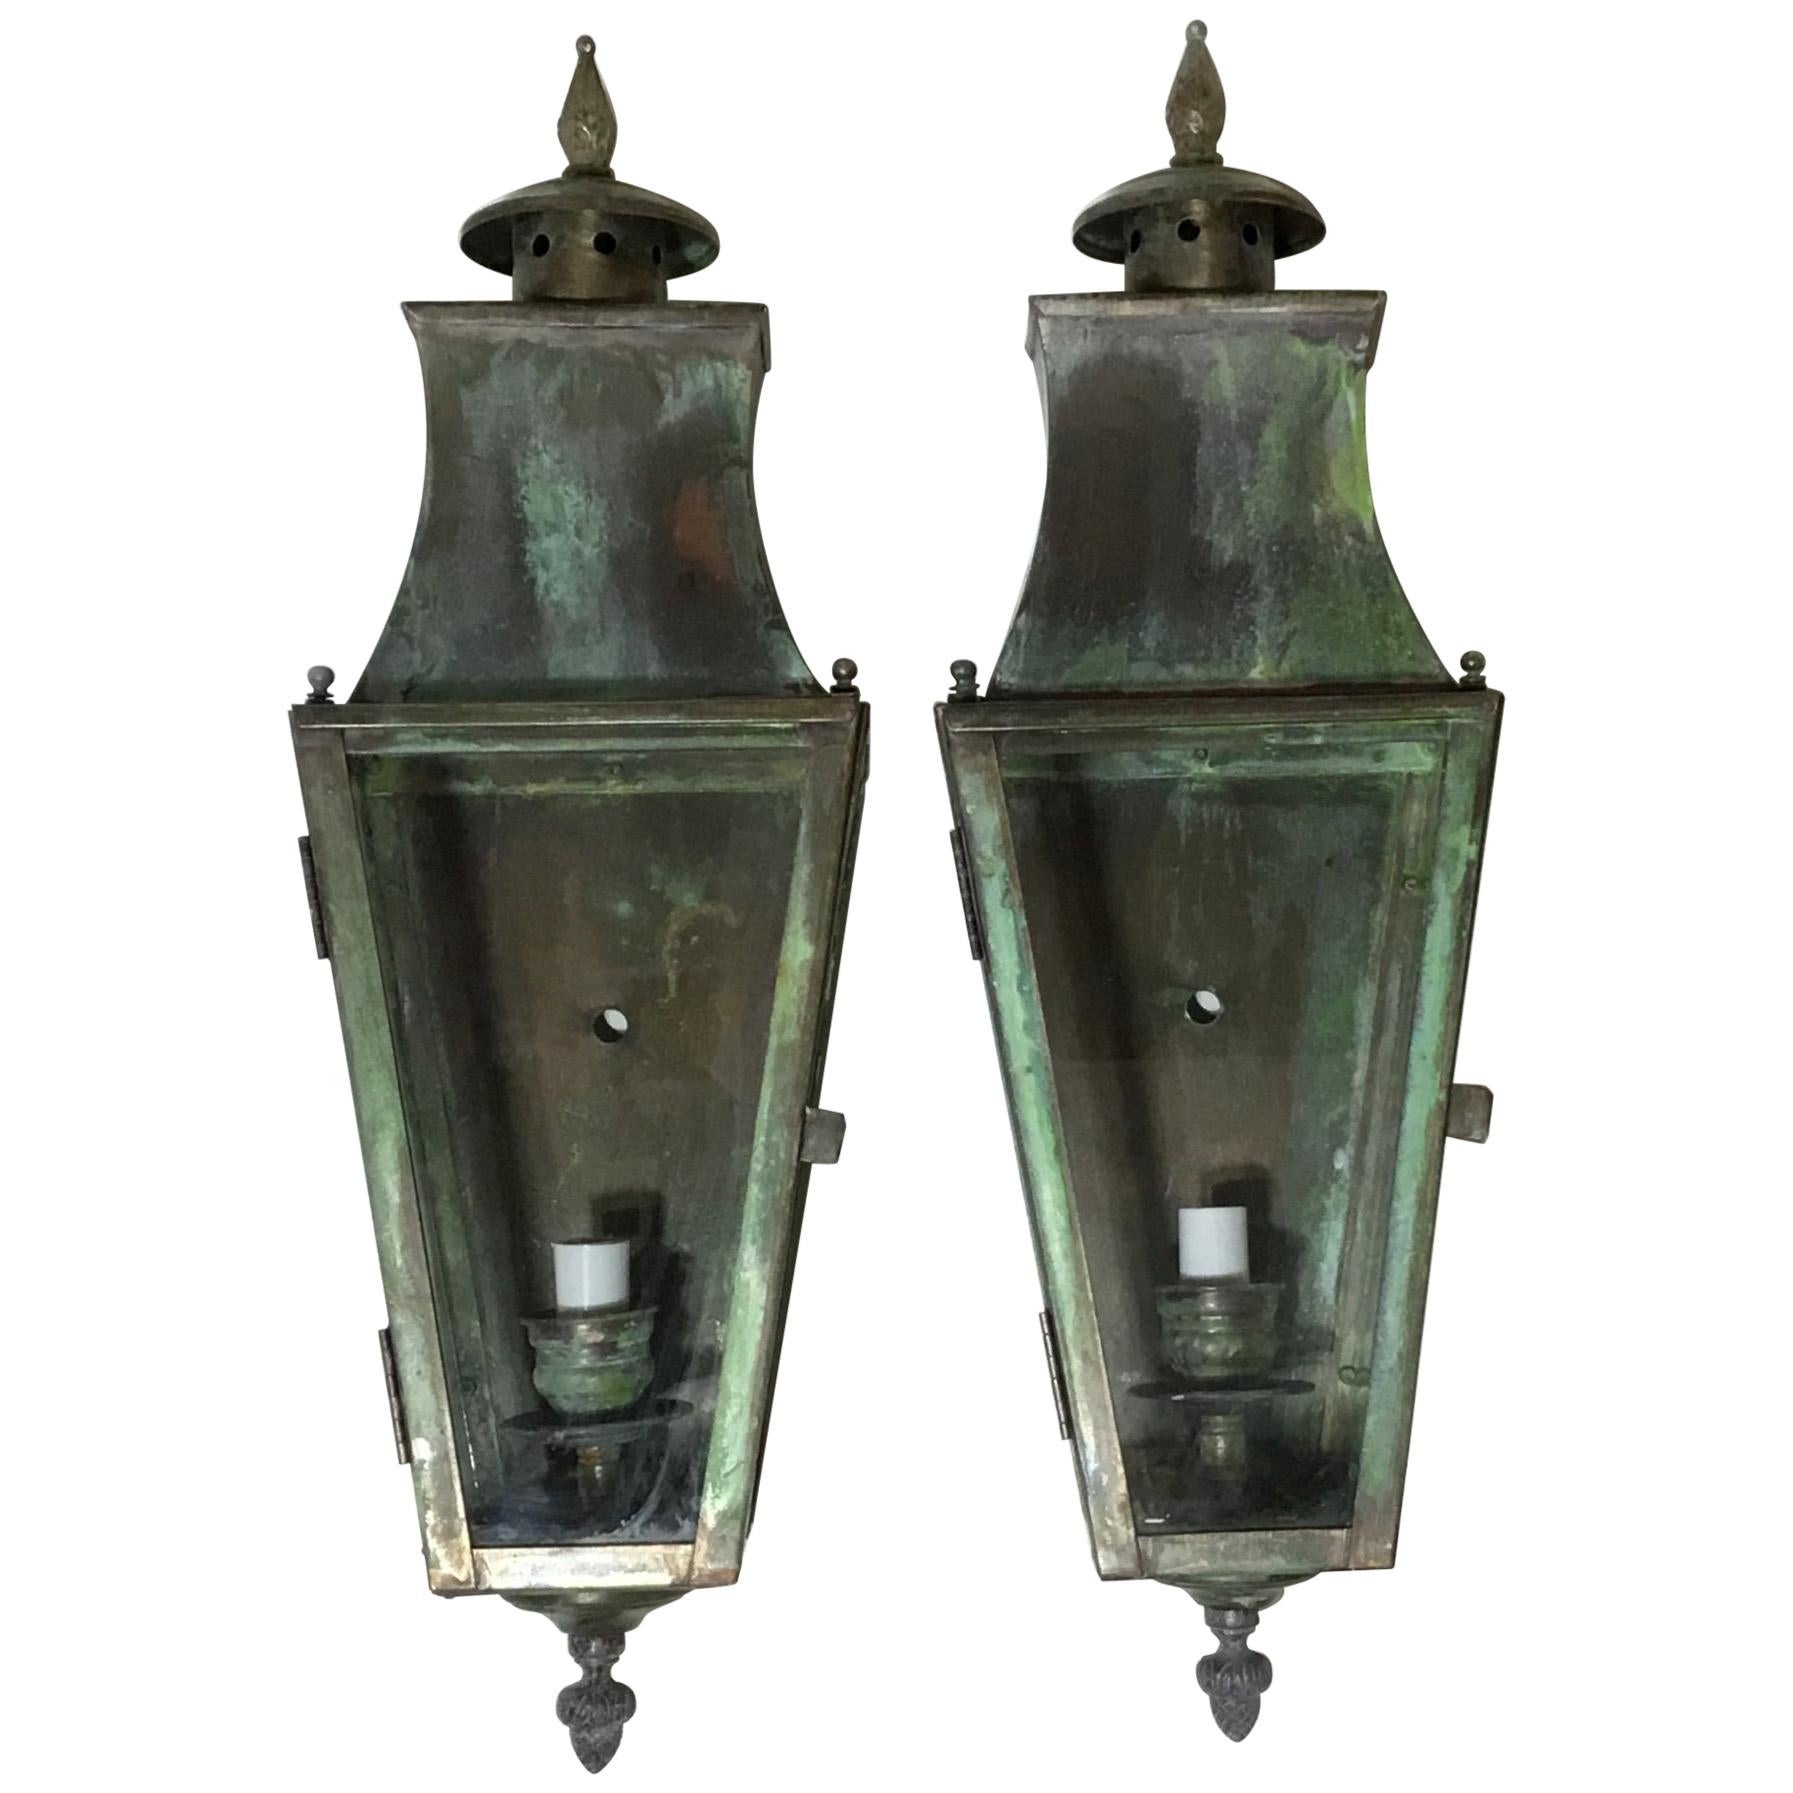 Pair of Wall Hanging Brass Lantern